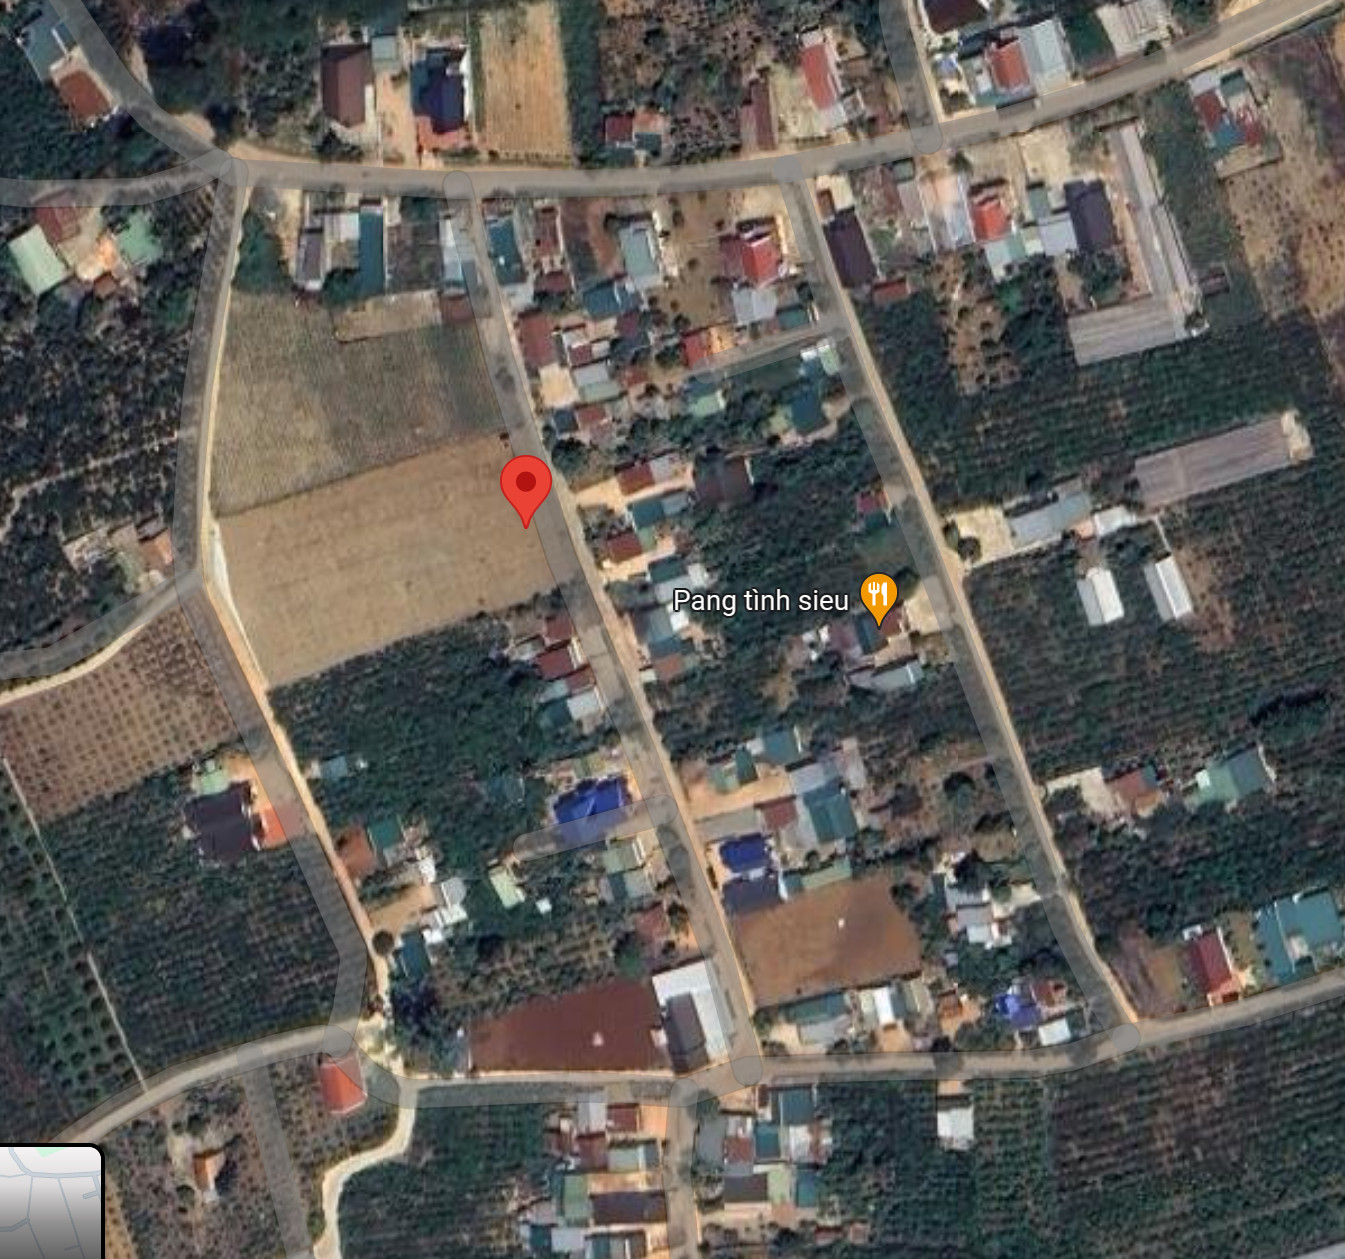 Thanh lí lô đất cuối cùng Mê Linh quy hoạch TP Đà Lạt chỉ 860 triệu - Ảnh 1